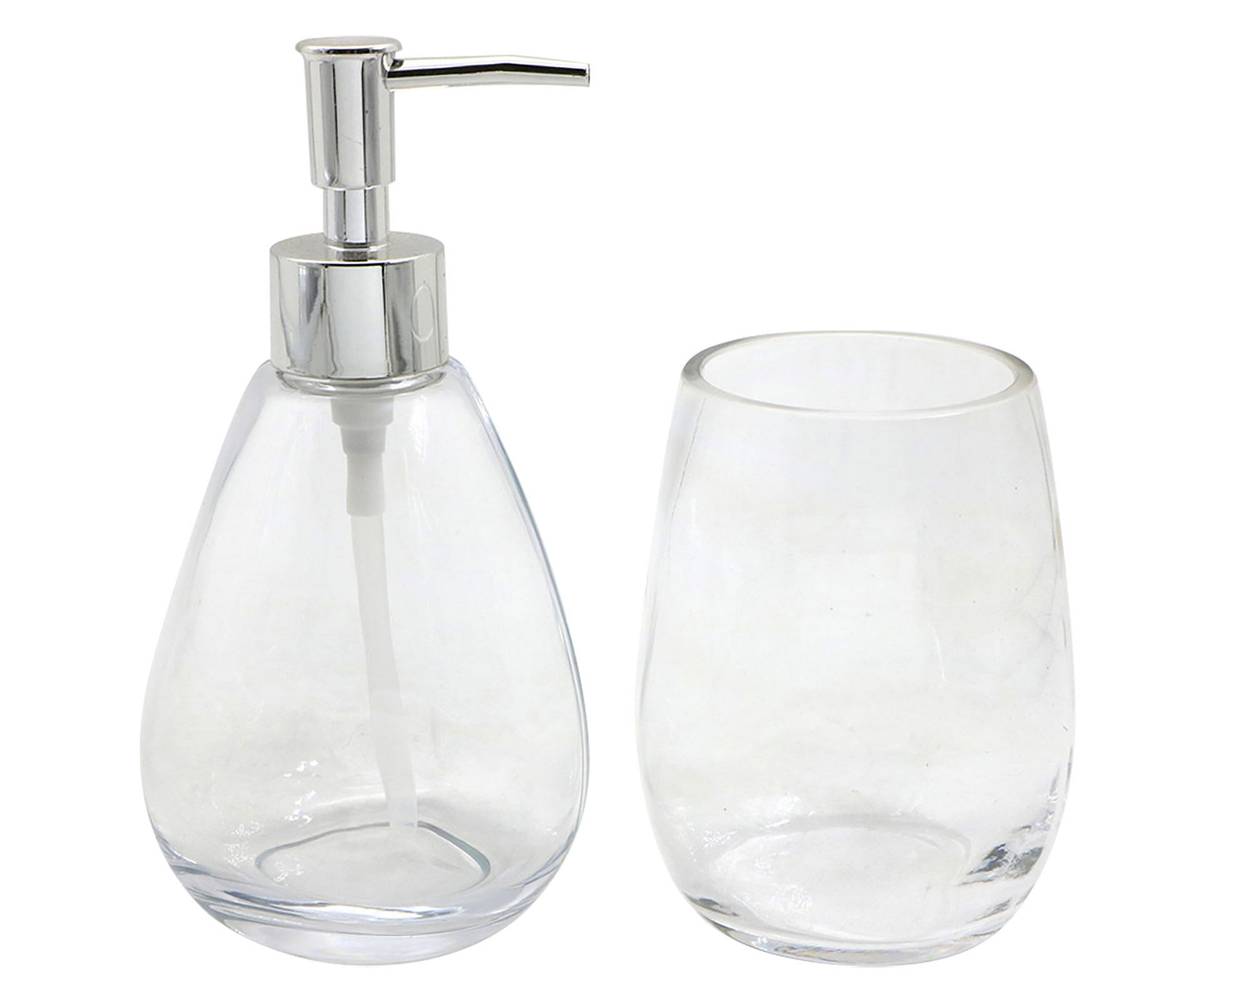 Cotidiana set accesorios de baño transparente (1 set 2 u)